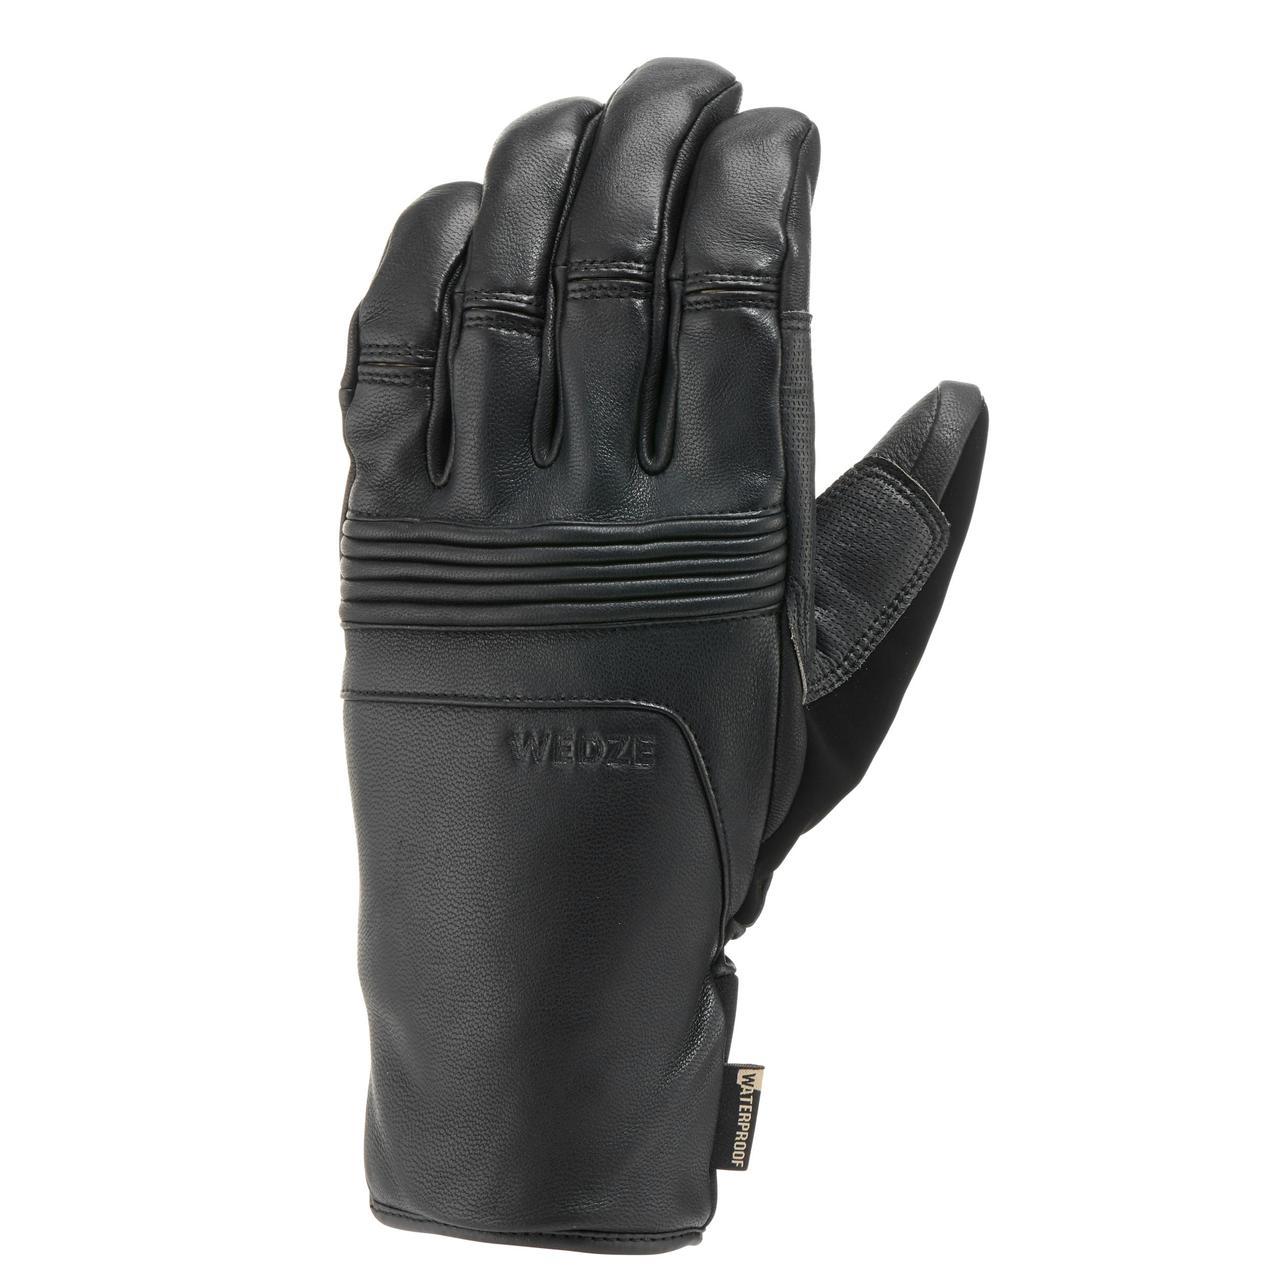 Лижні рукавиці 900 для швидкісних спусків, для дорослих - Чорні - S